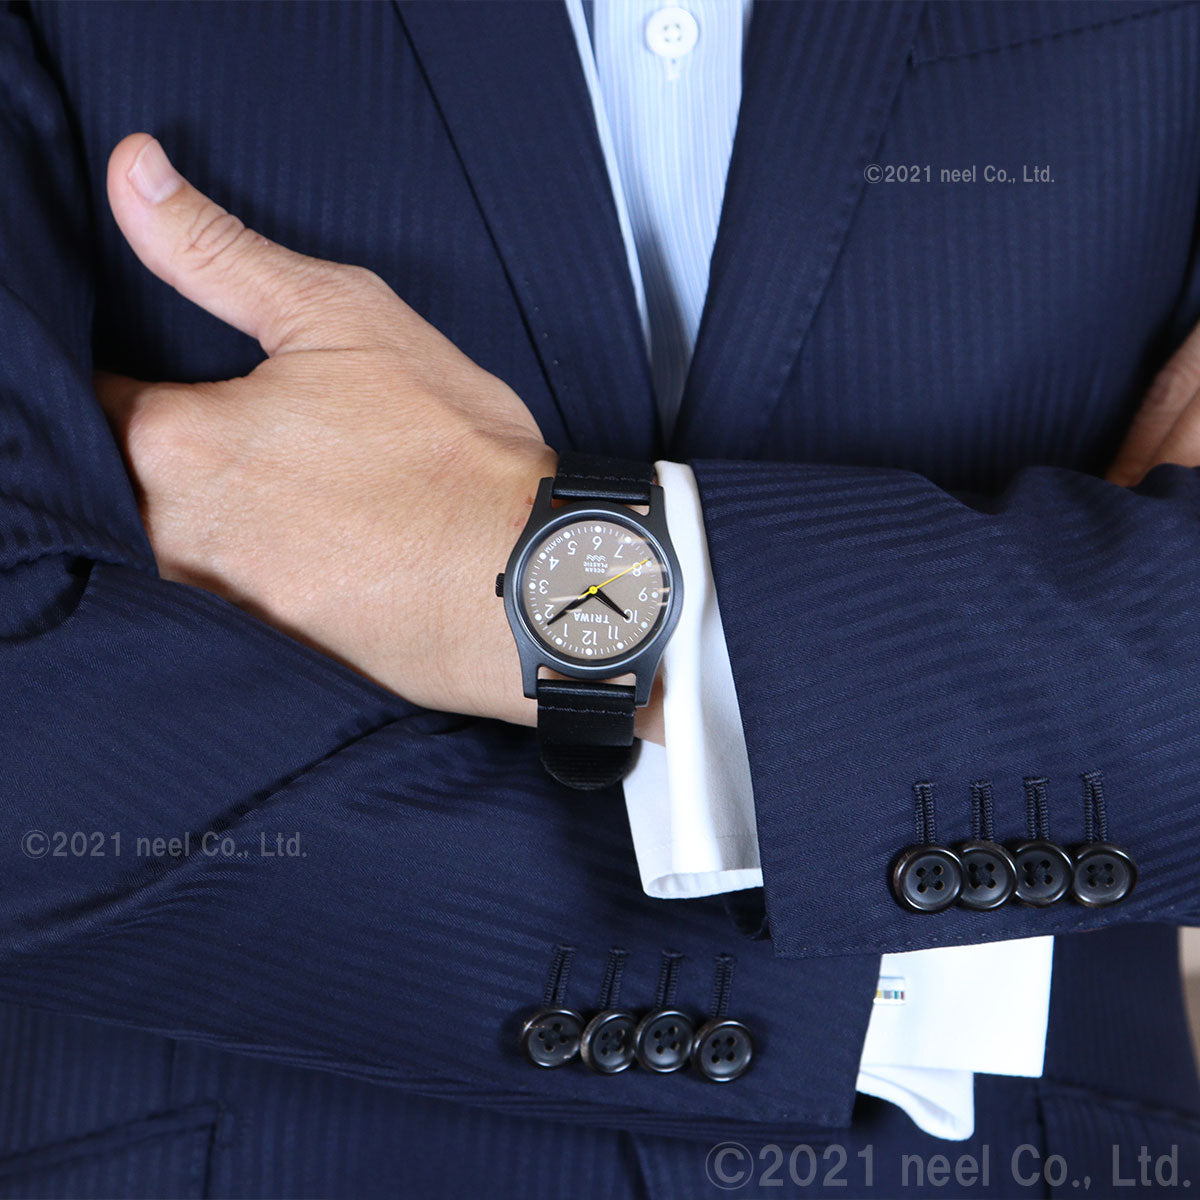 トリワ TRIWA 腕時計 メンズ レディース タイムフォーオーシャンズ 日本限定モデル グレー TIME FOR OCEANS JAPAN LIMITED TFO109-CL150101